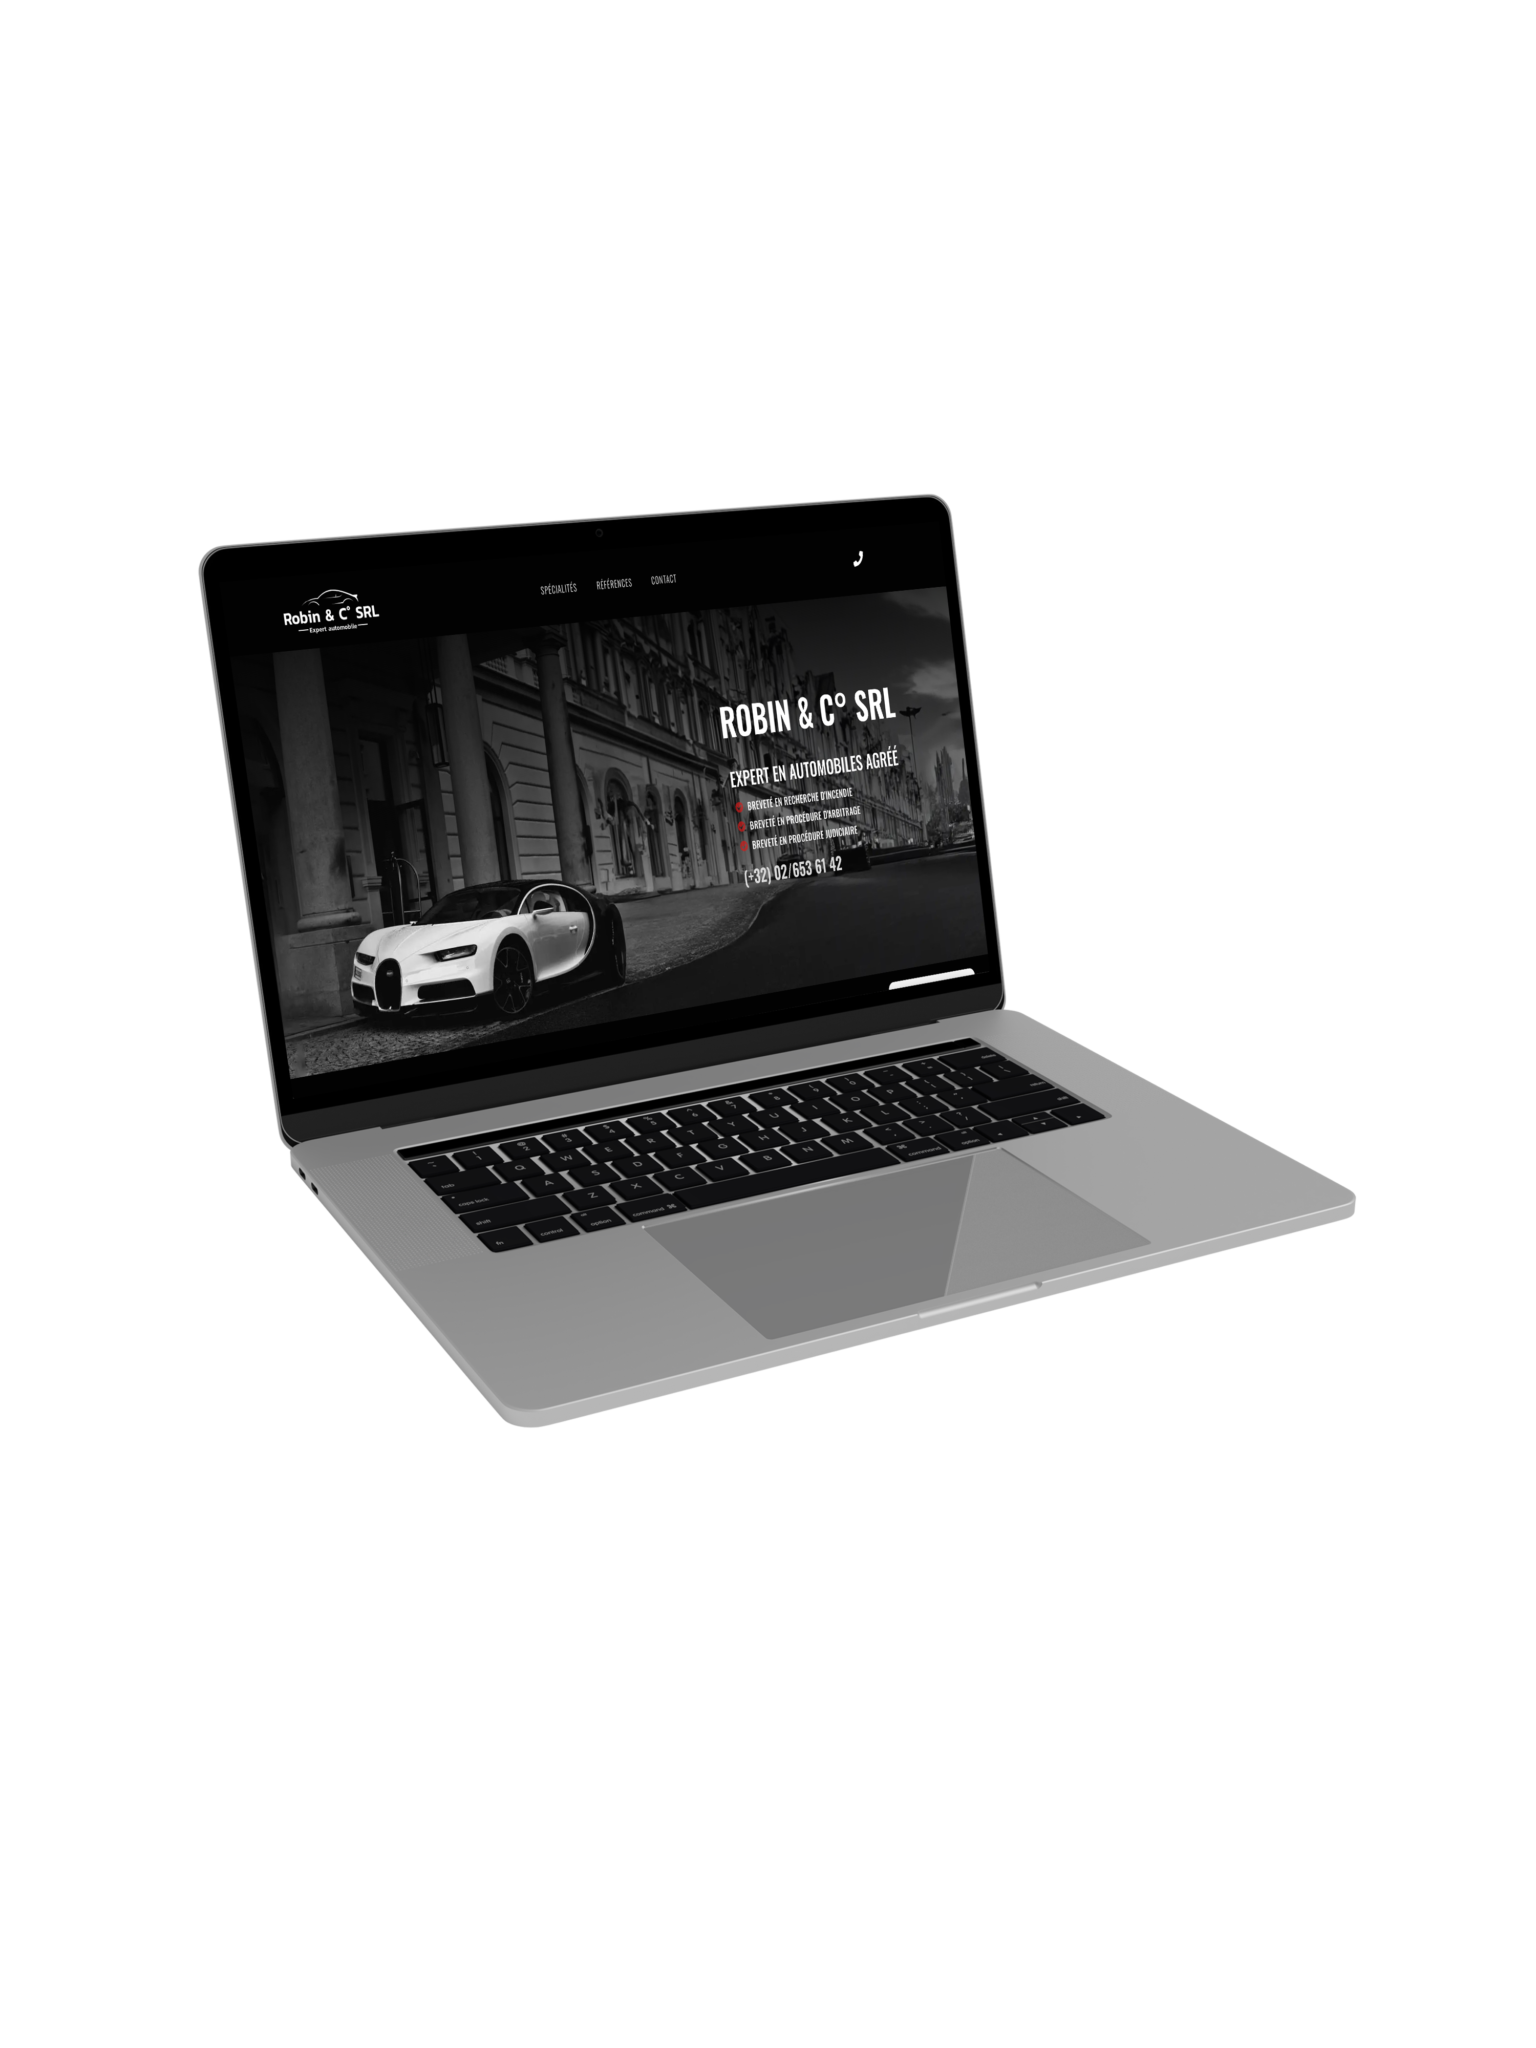 Ordinateur portable affichant le site web de Robin & Co SRL, expert en automobiles agréé. L'image montre une voiture de luxe devant un bâtiment historique.